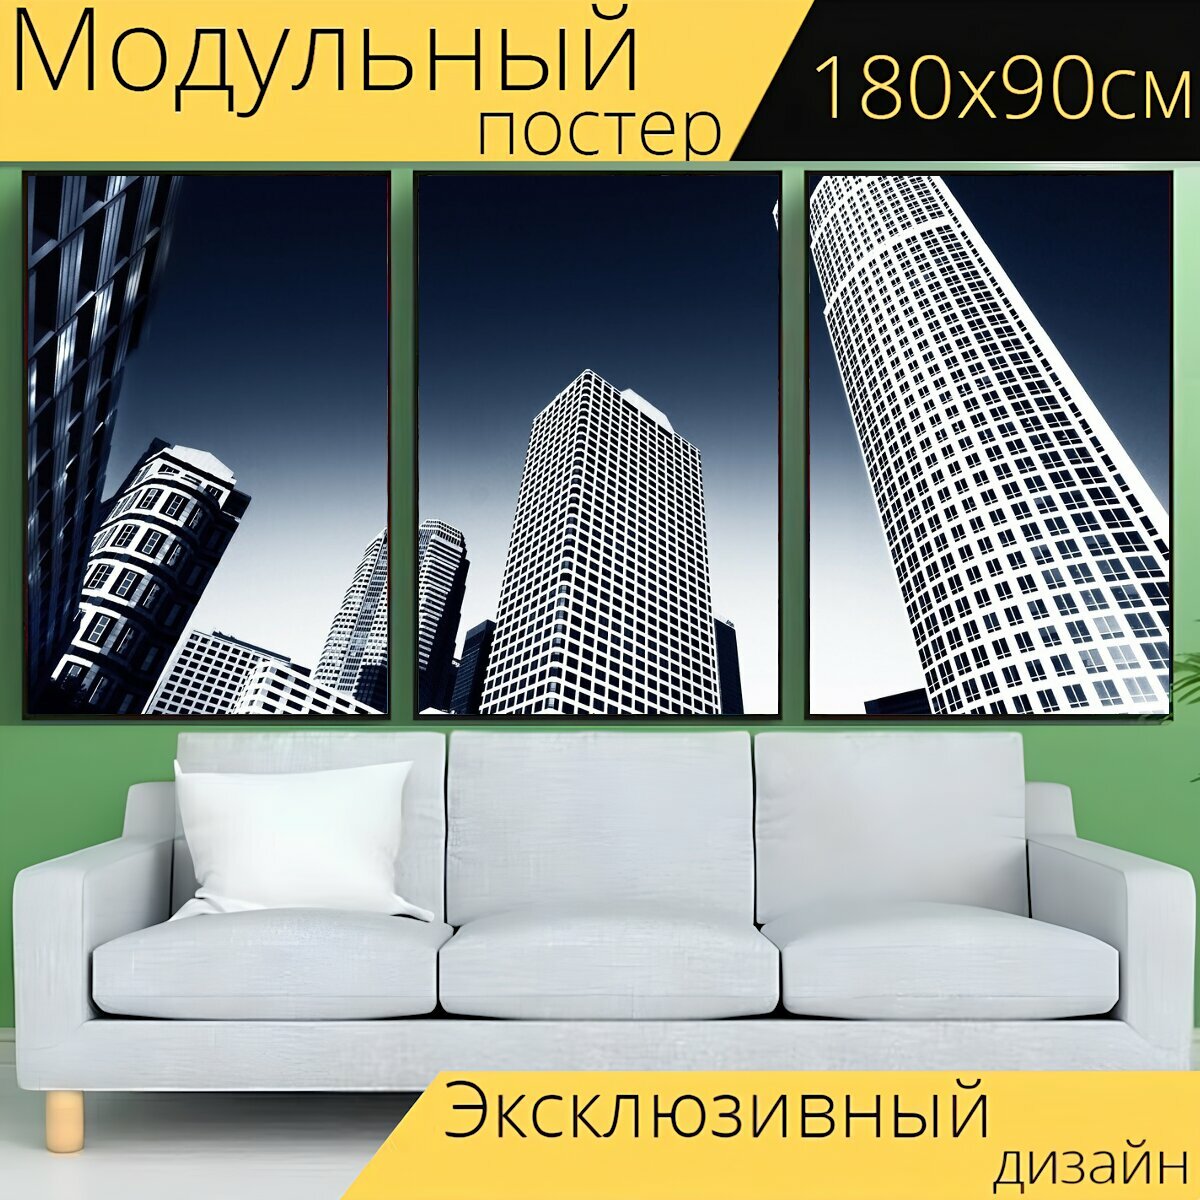 Модульный постер "Небоскреб, город, большая высота" 180 x 90 см. для интерьера